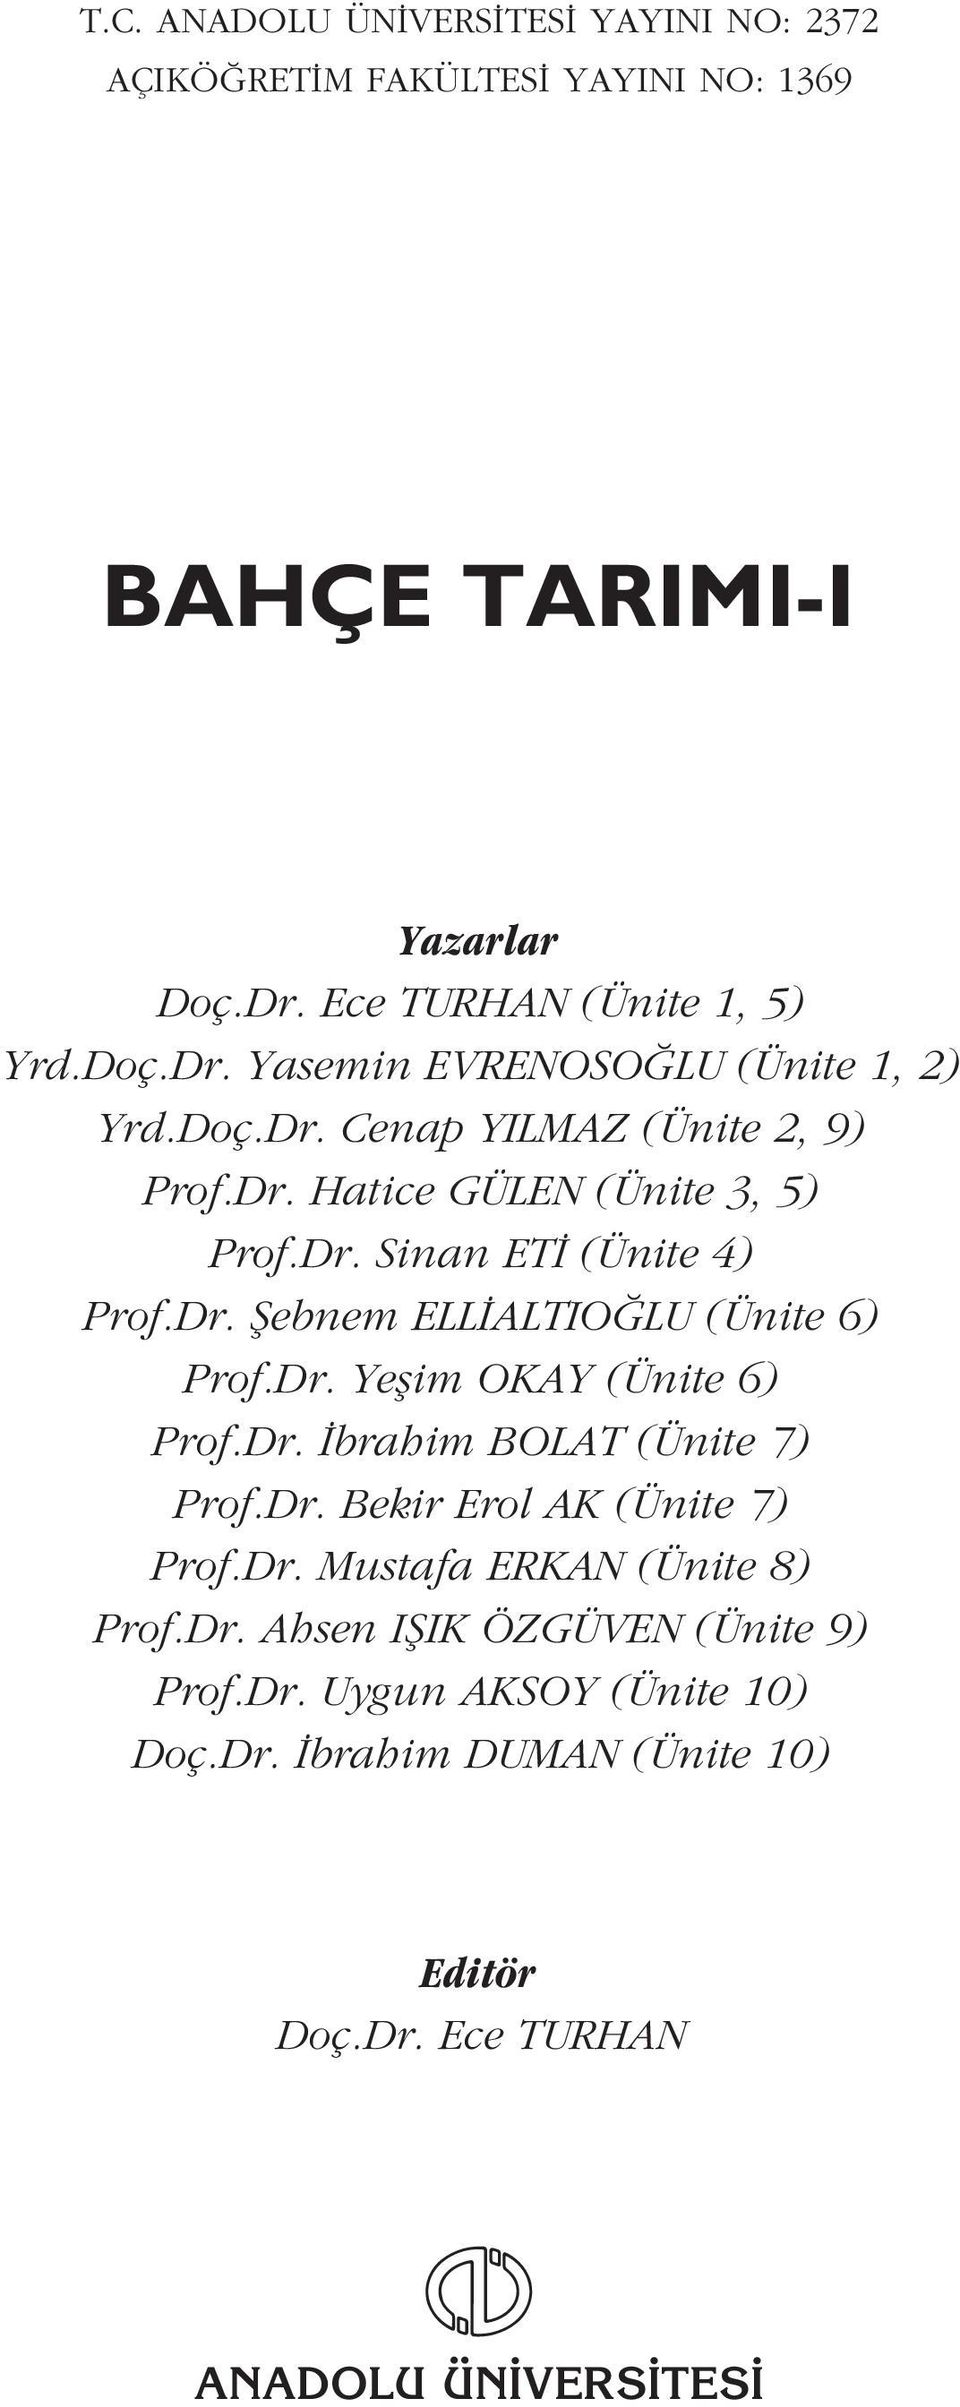 Dr. brahim BOLAT (Ünite 7) Prof.Dr. Bekir Erol AK (Ünite 7) Prof.Dr. Mustafa ERKAN (Ünite 8) Prof.Dr. Ahsen IfiIK ÖZGÜVEN (Ünite 9) Prof.Dr. Uygun AKSOY (Ünite 10) Doç.